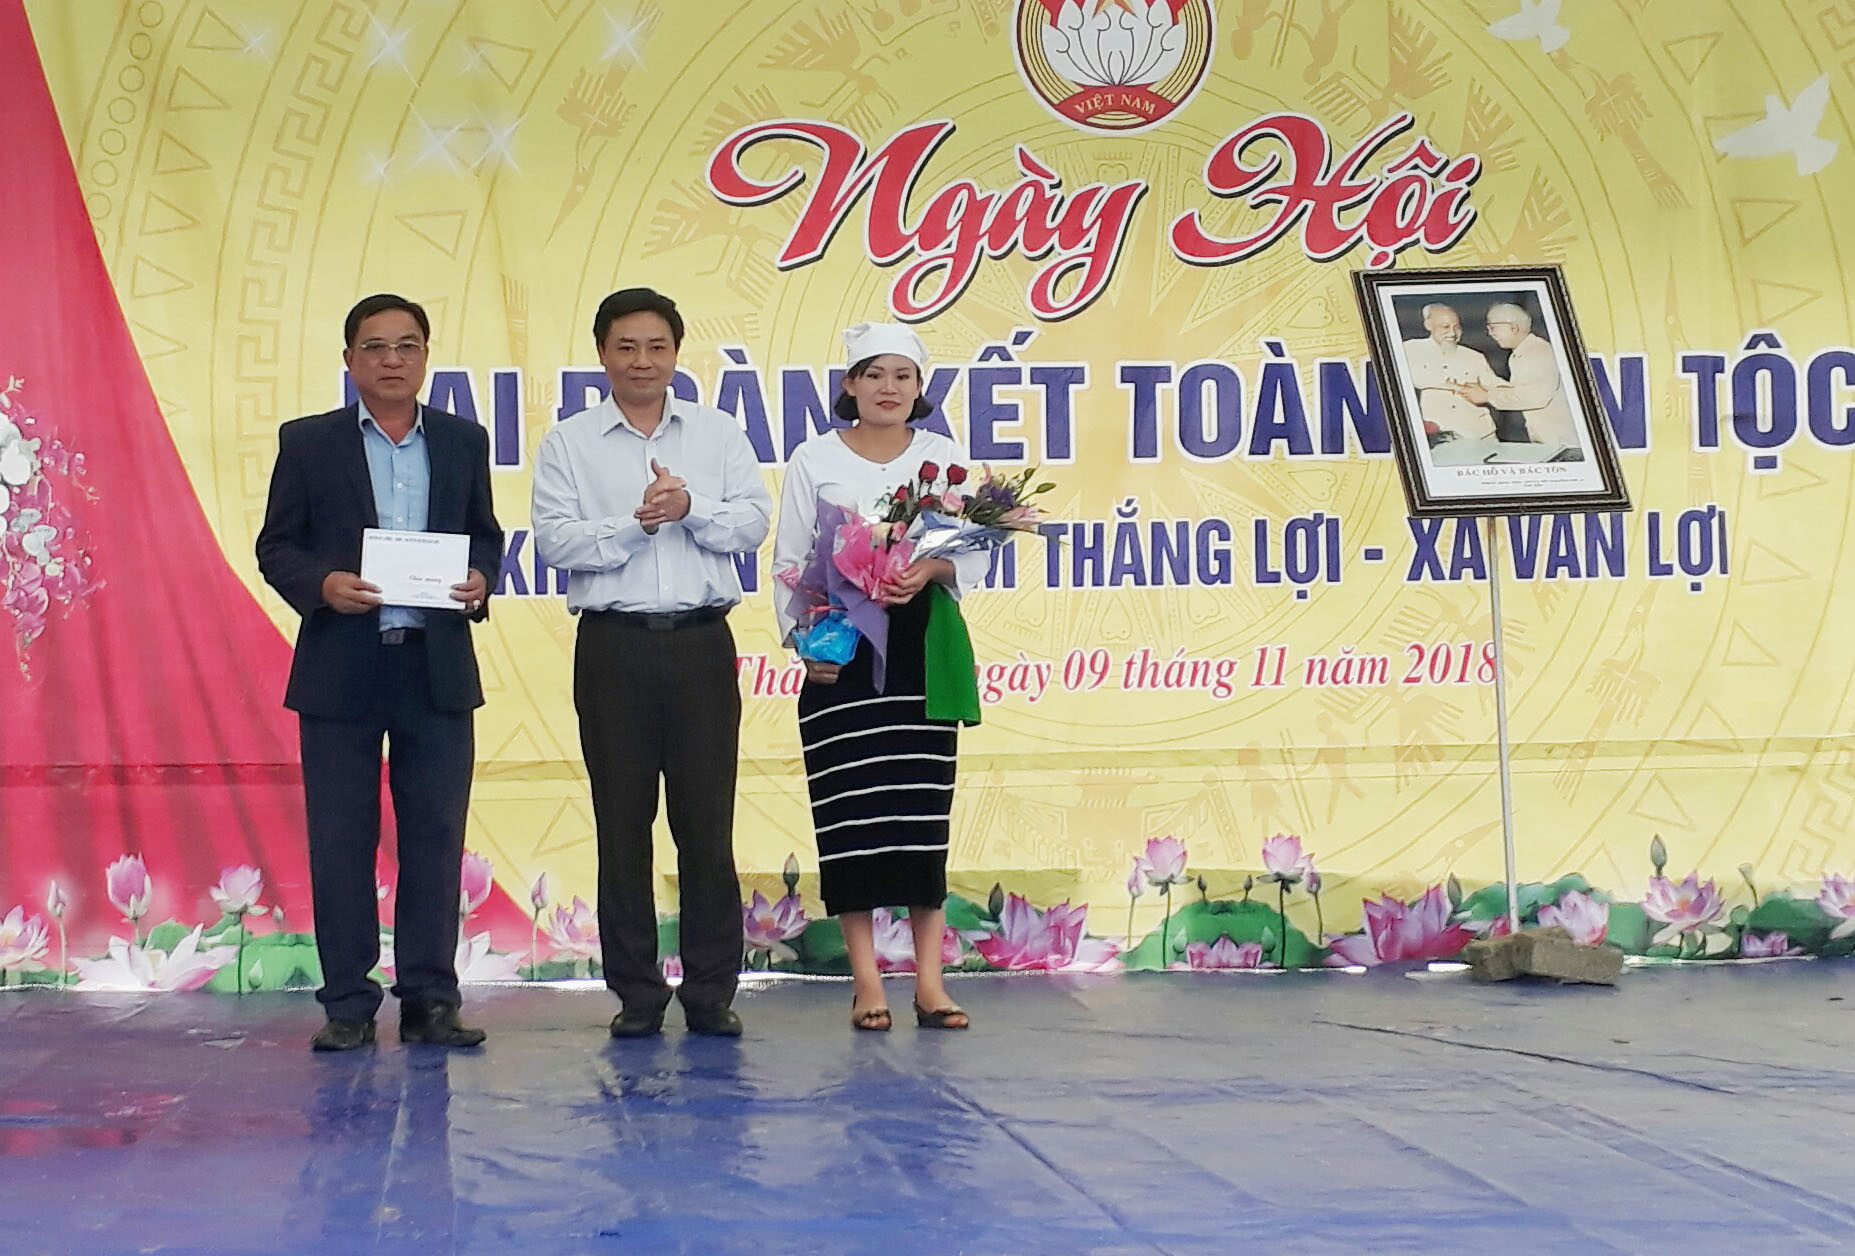 Đồng chí Hồ Lê Ngọc trao trao số tiền 50 triệu đồng từ nguồn quỹ vì người nghèo của huyện cho gia đình anh Đậu Văn Đấu làm nhà đại đoàn kết. Ảnh: Thu Hường